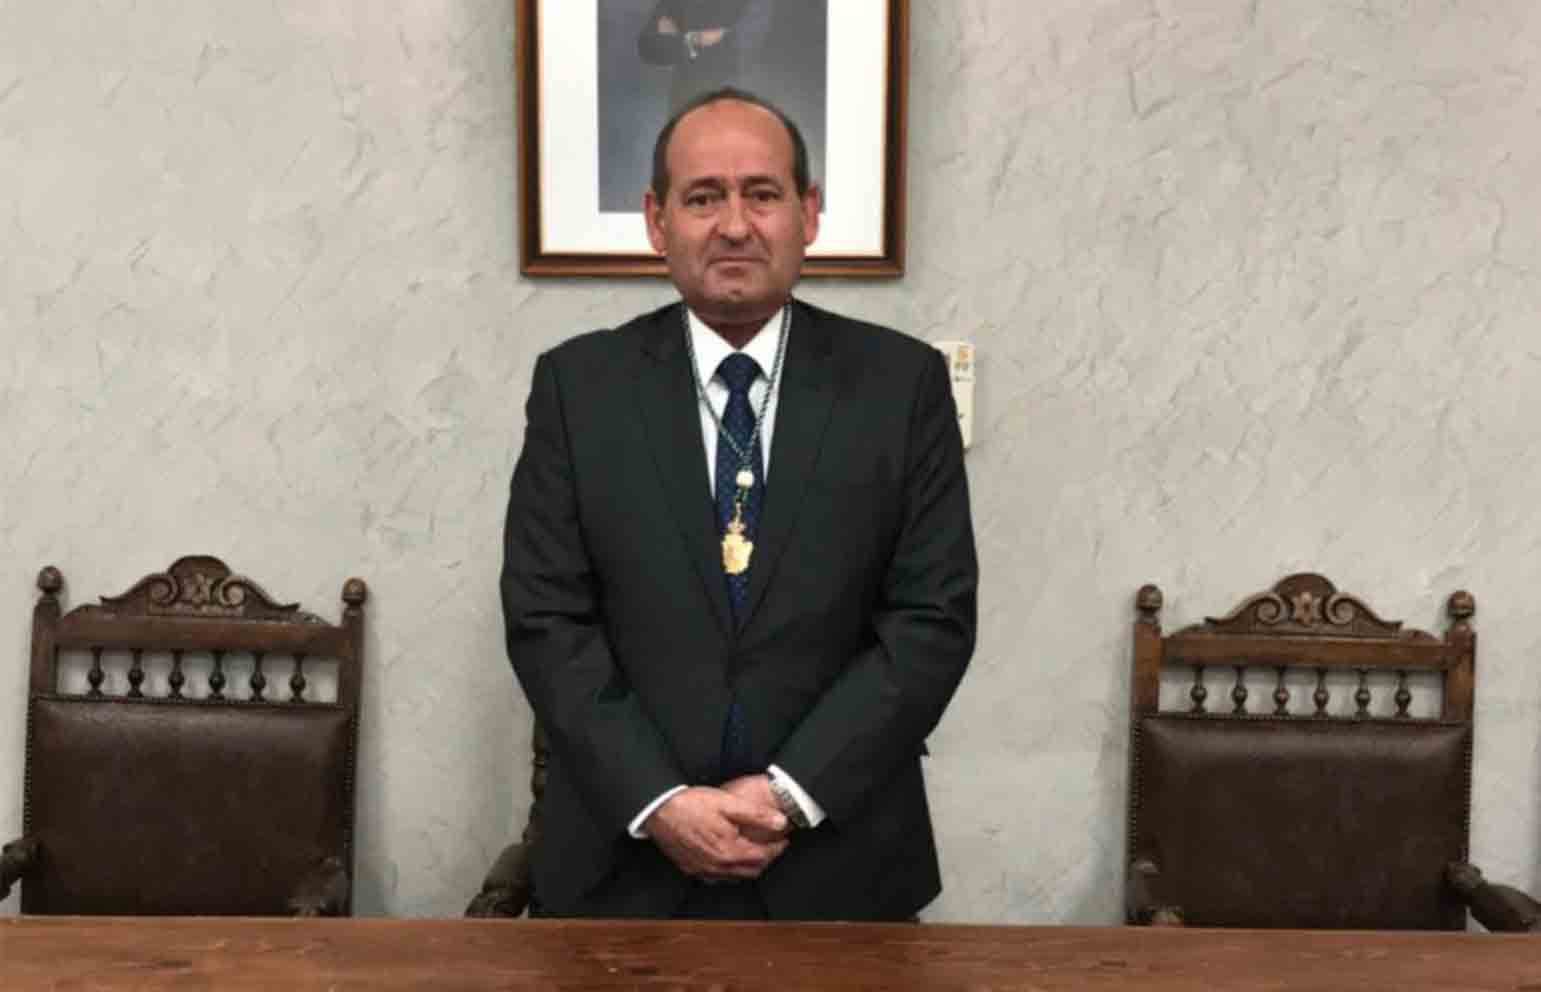 Ángel de Vega, alcalde de Cabañas de Yepes y diputado provincial, ha muerto a los 58 años.